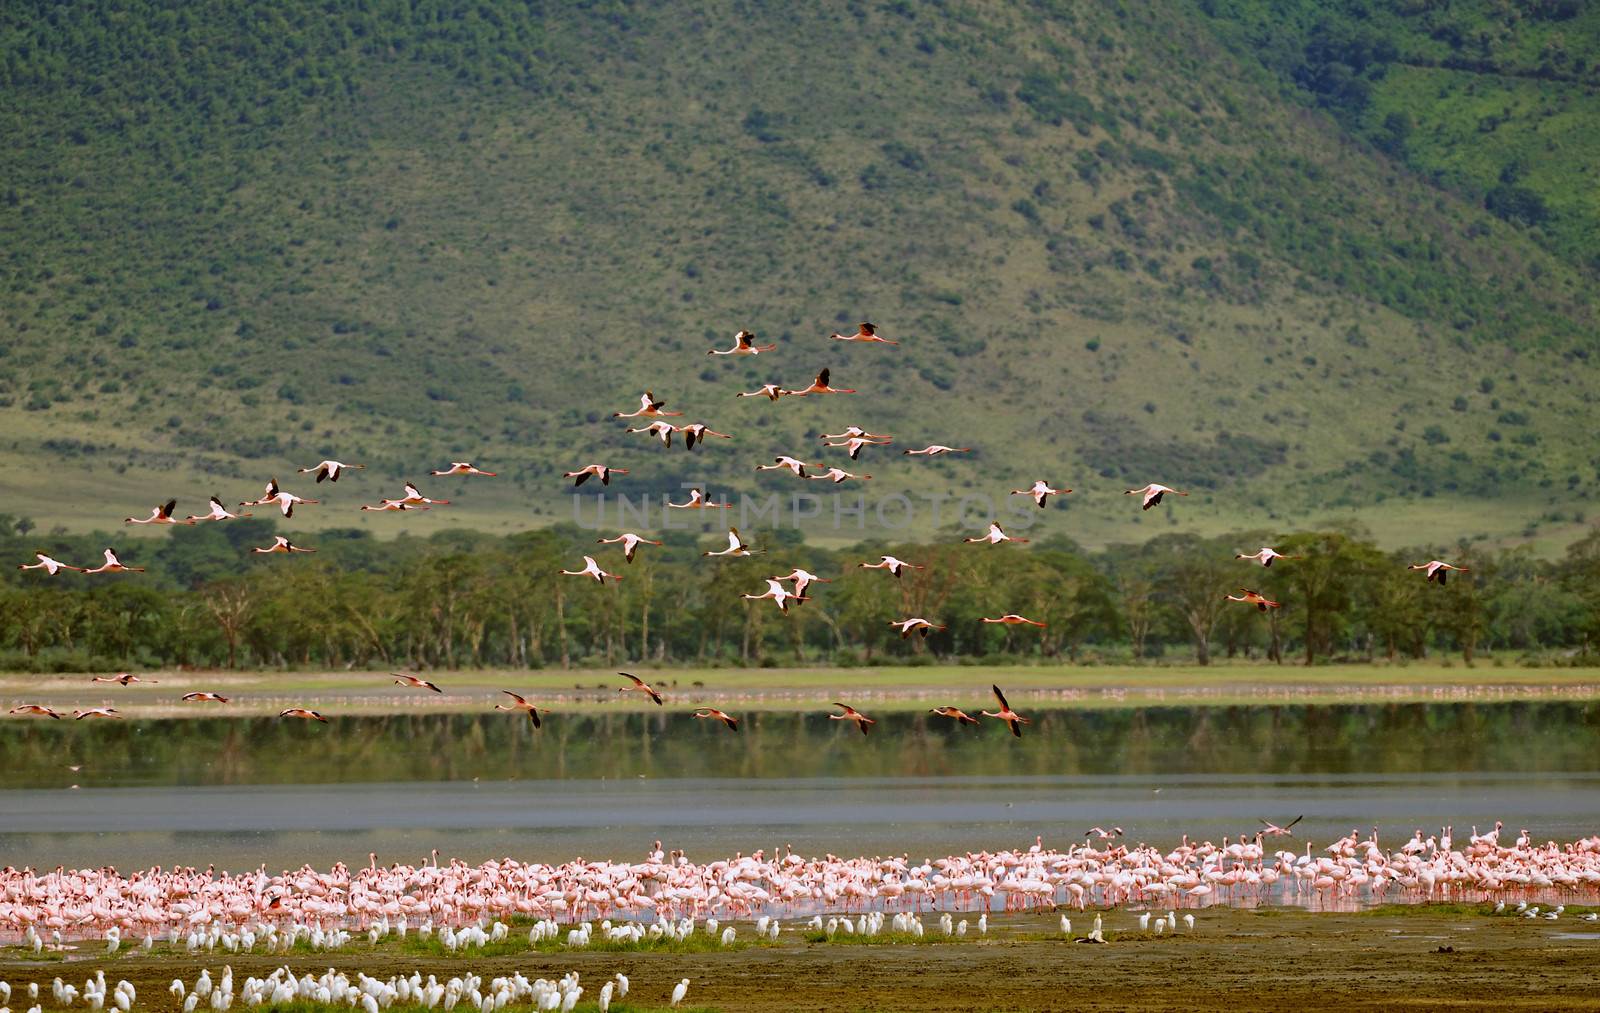 birds of Tanzania by moizhusein